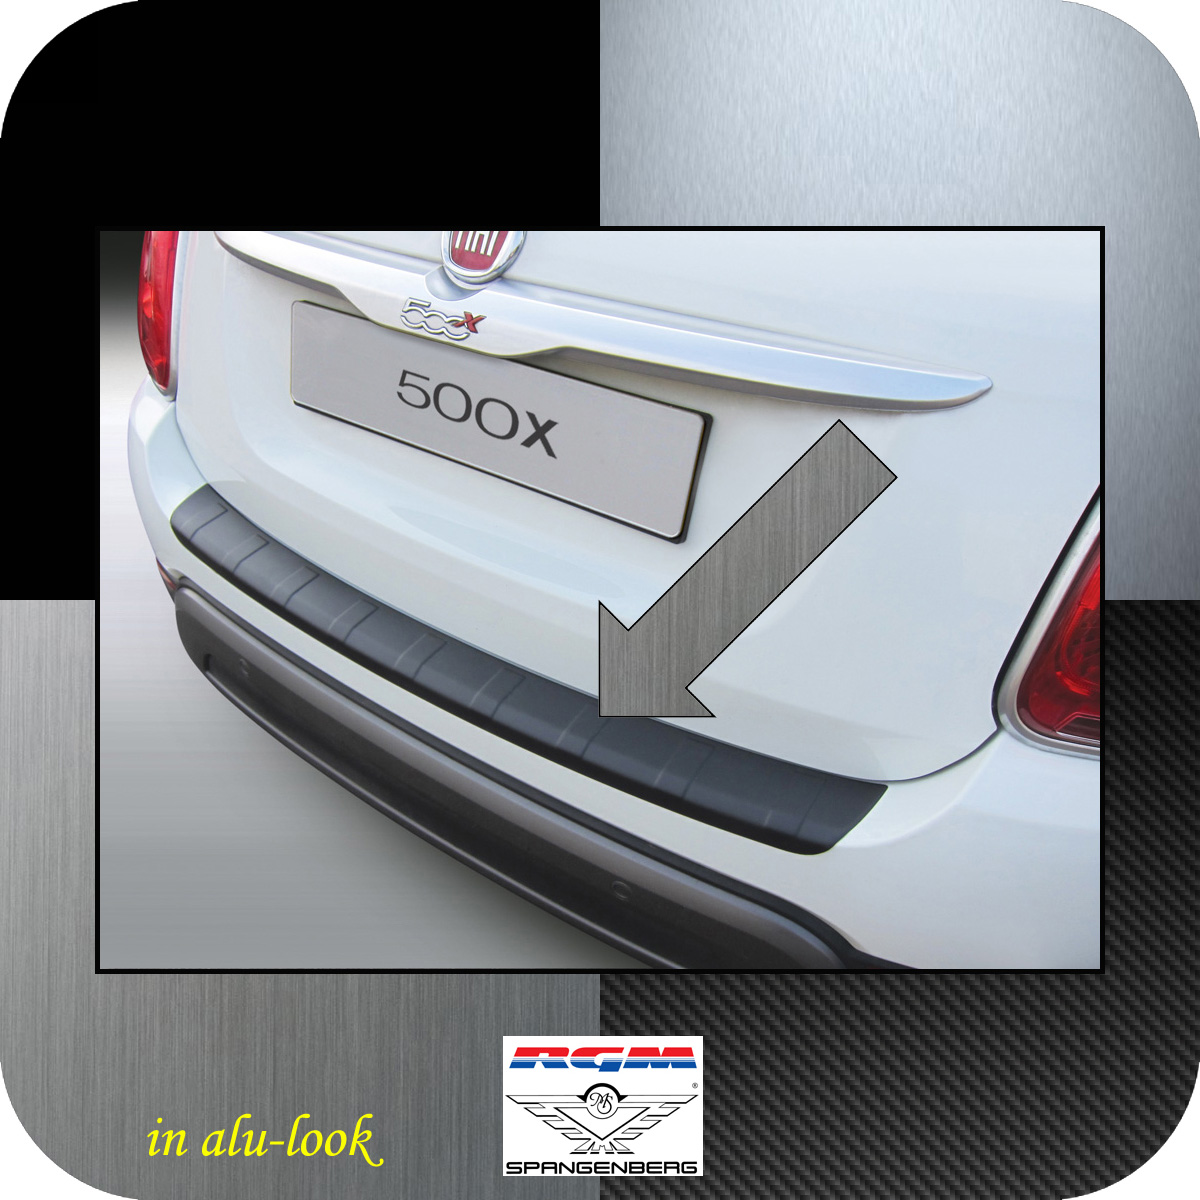 Ladekantenschutz Alu-Look gerippt Fiat 500X ab Baujahr 09.2014- 3504997